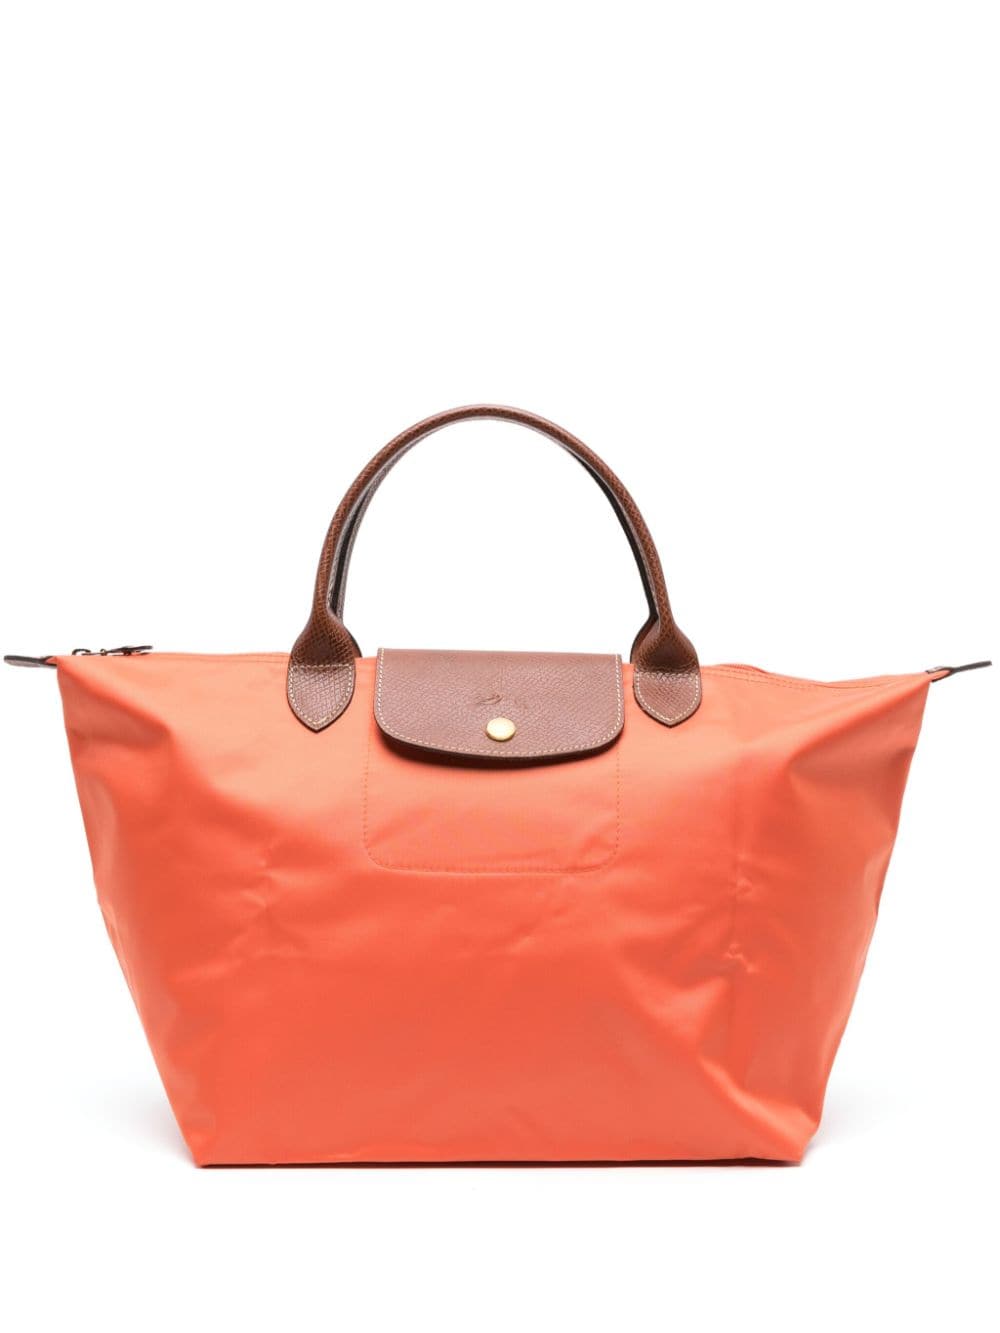 Longchamp Medium Le Pliage Original Tote Bag In Orange